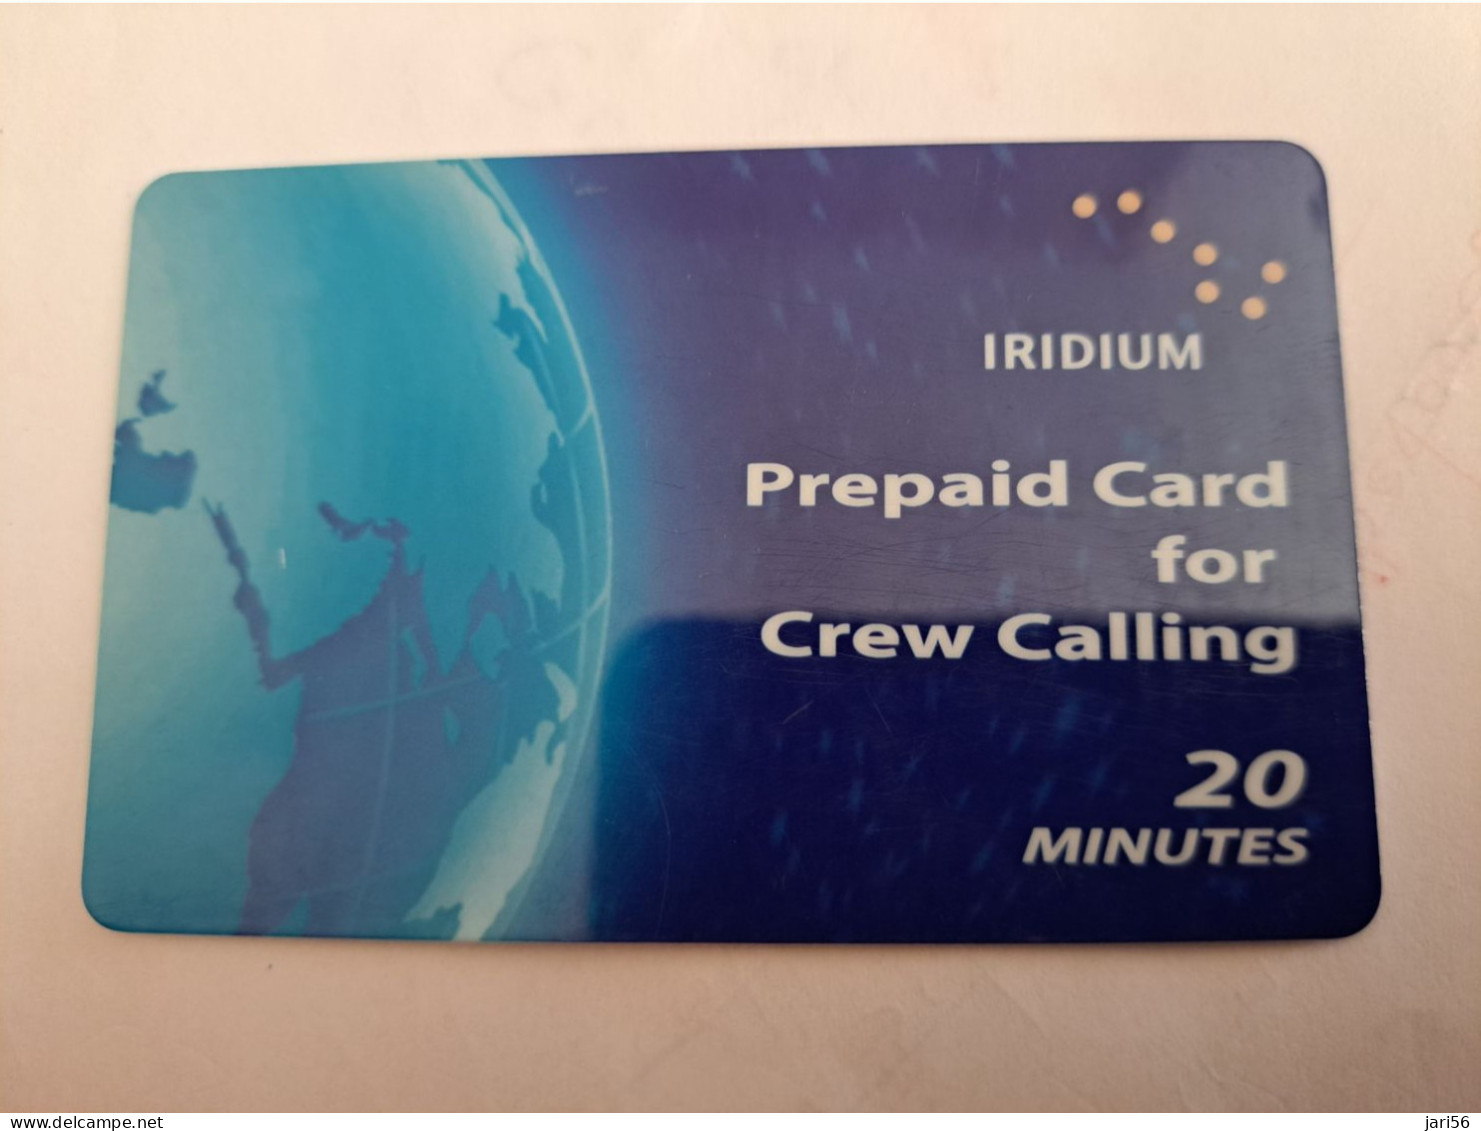 GREAT BRITAIN / IRIDIUM PREPAID/ CREW CALLING  /20 MINUTES   PREPAID CARD / USED       **14042** - [10] Colecciones